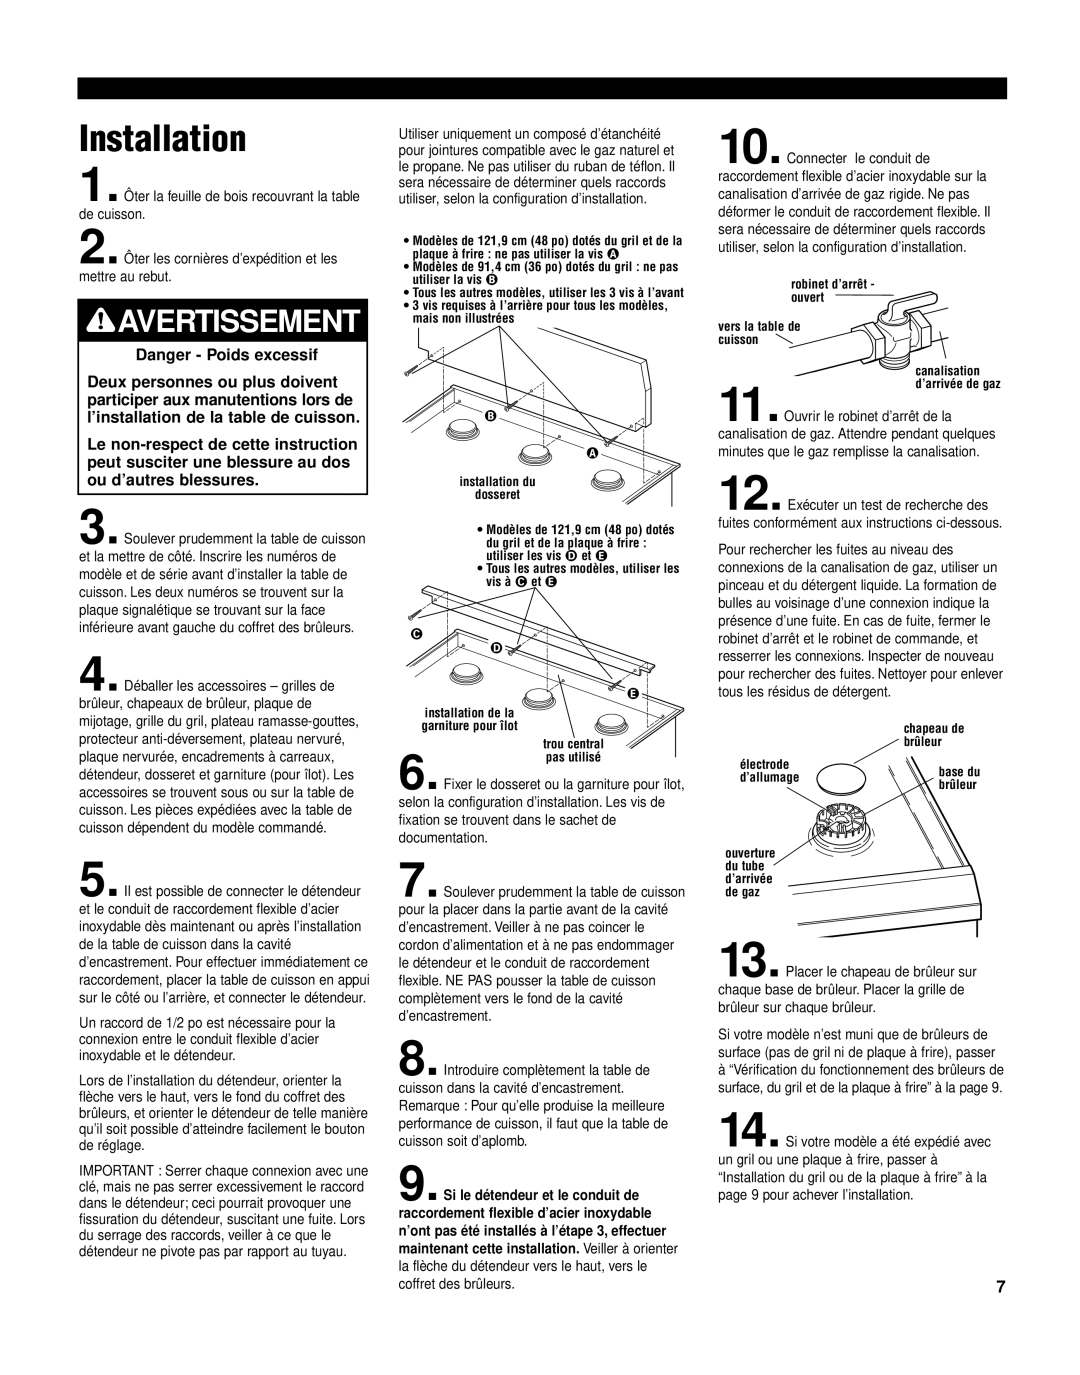 KitchenAid KGCP462K installation instructions Installation, Avertissement, Danger - Poids excessif 